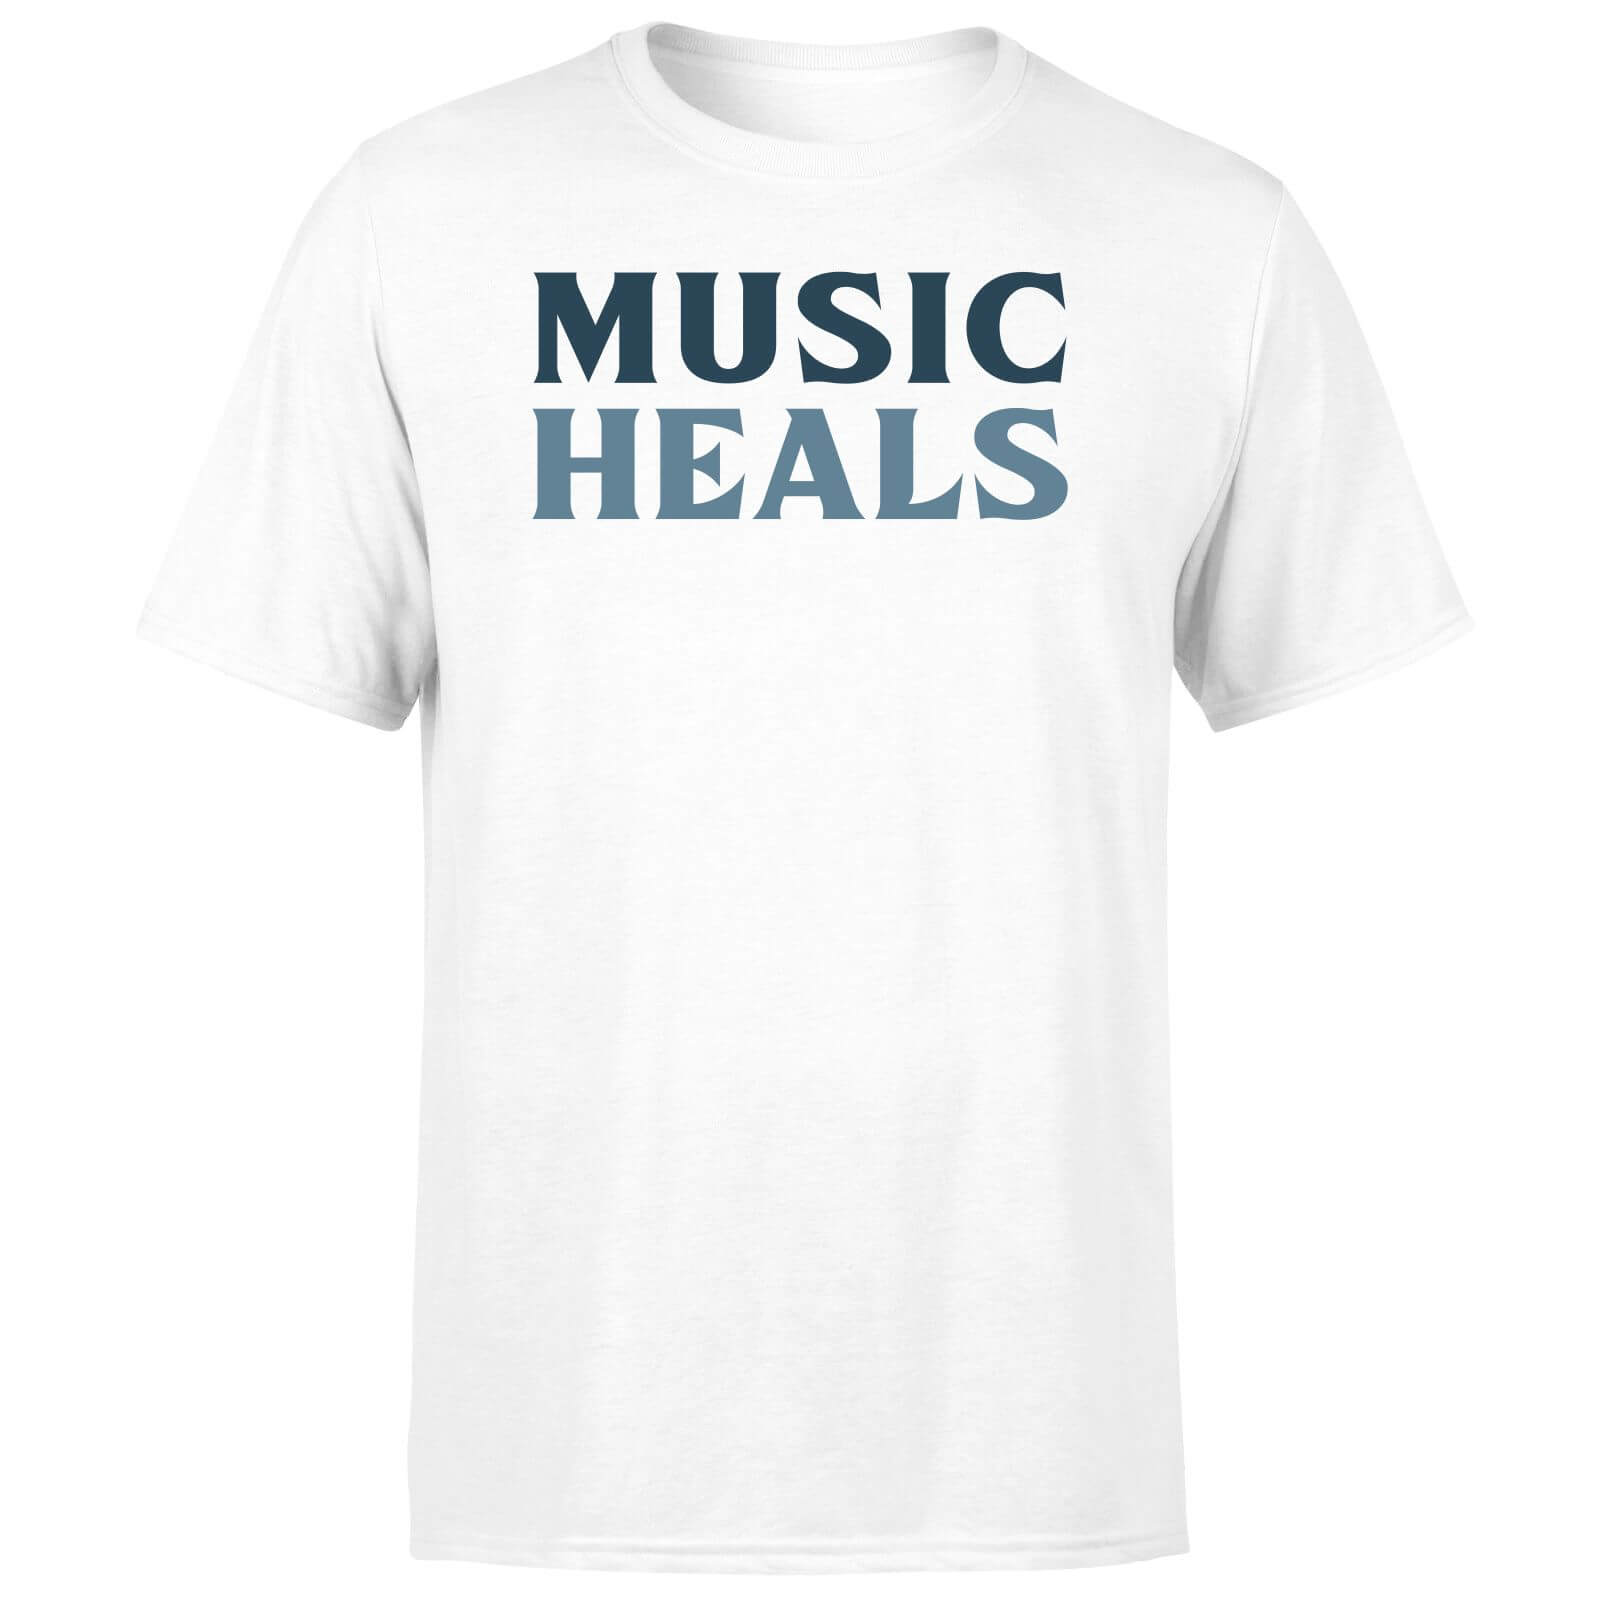 Music Heals Men's T-Shirt - White - XS - White